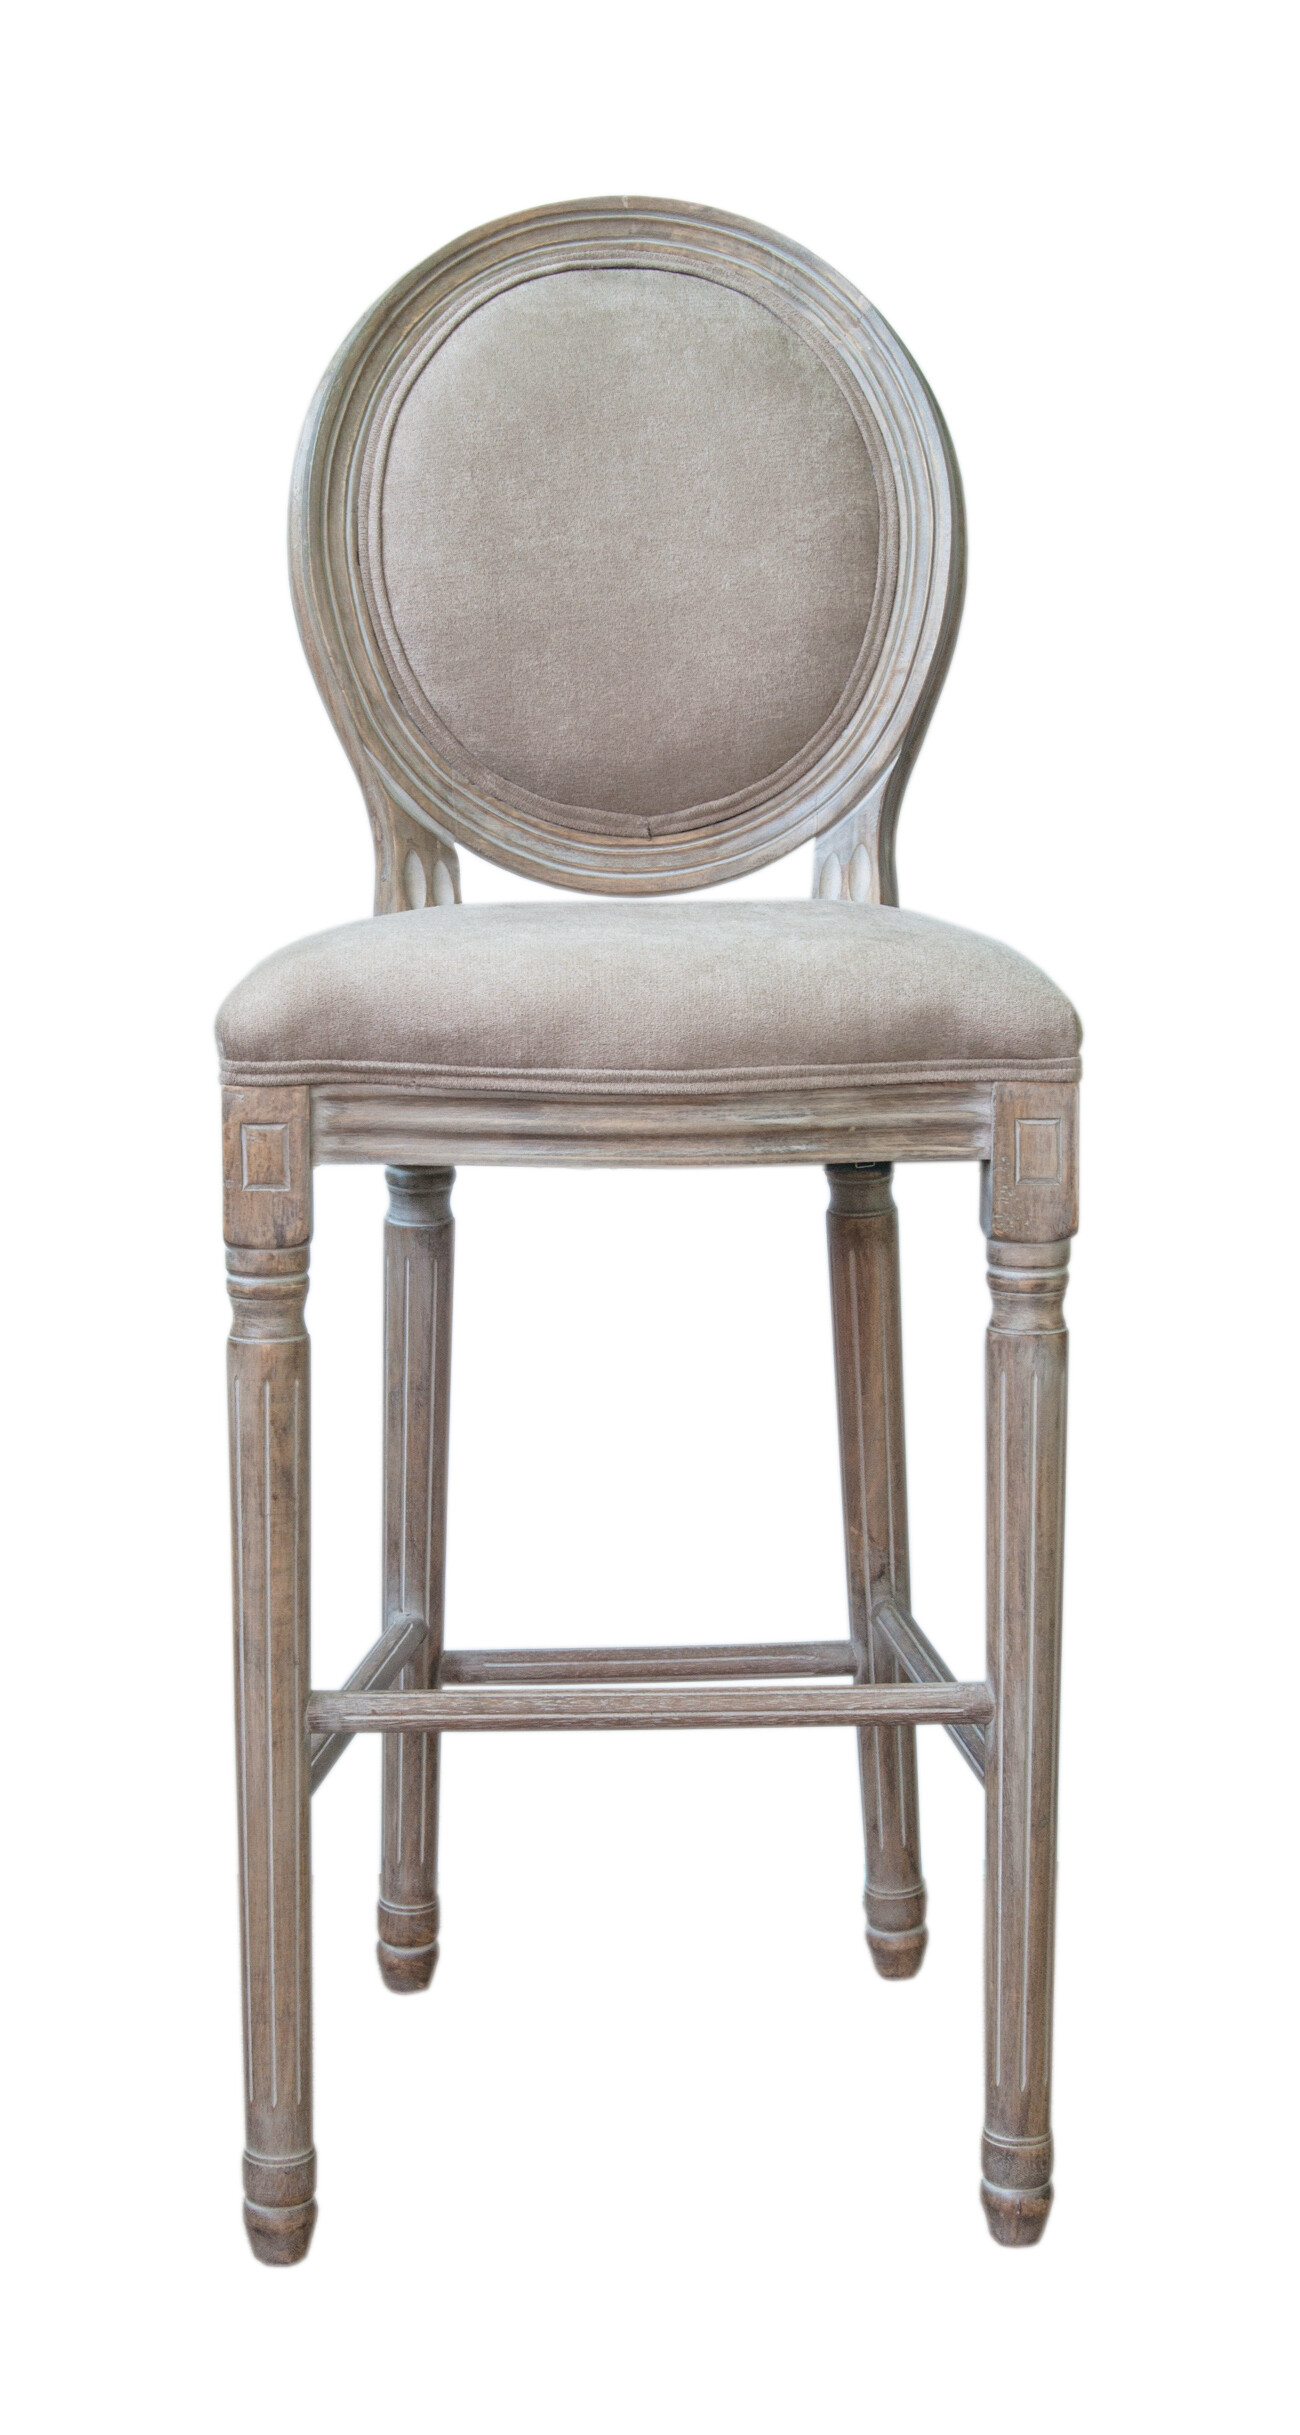 Барный стул с медальонной спинкой Filon mocca